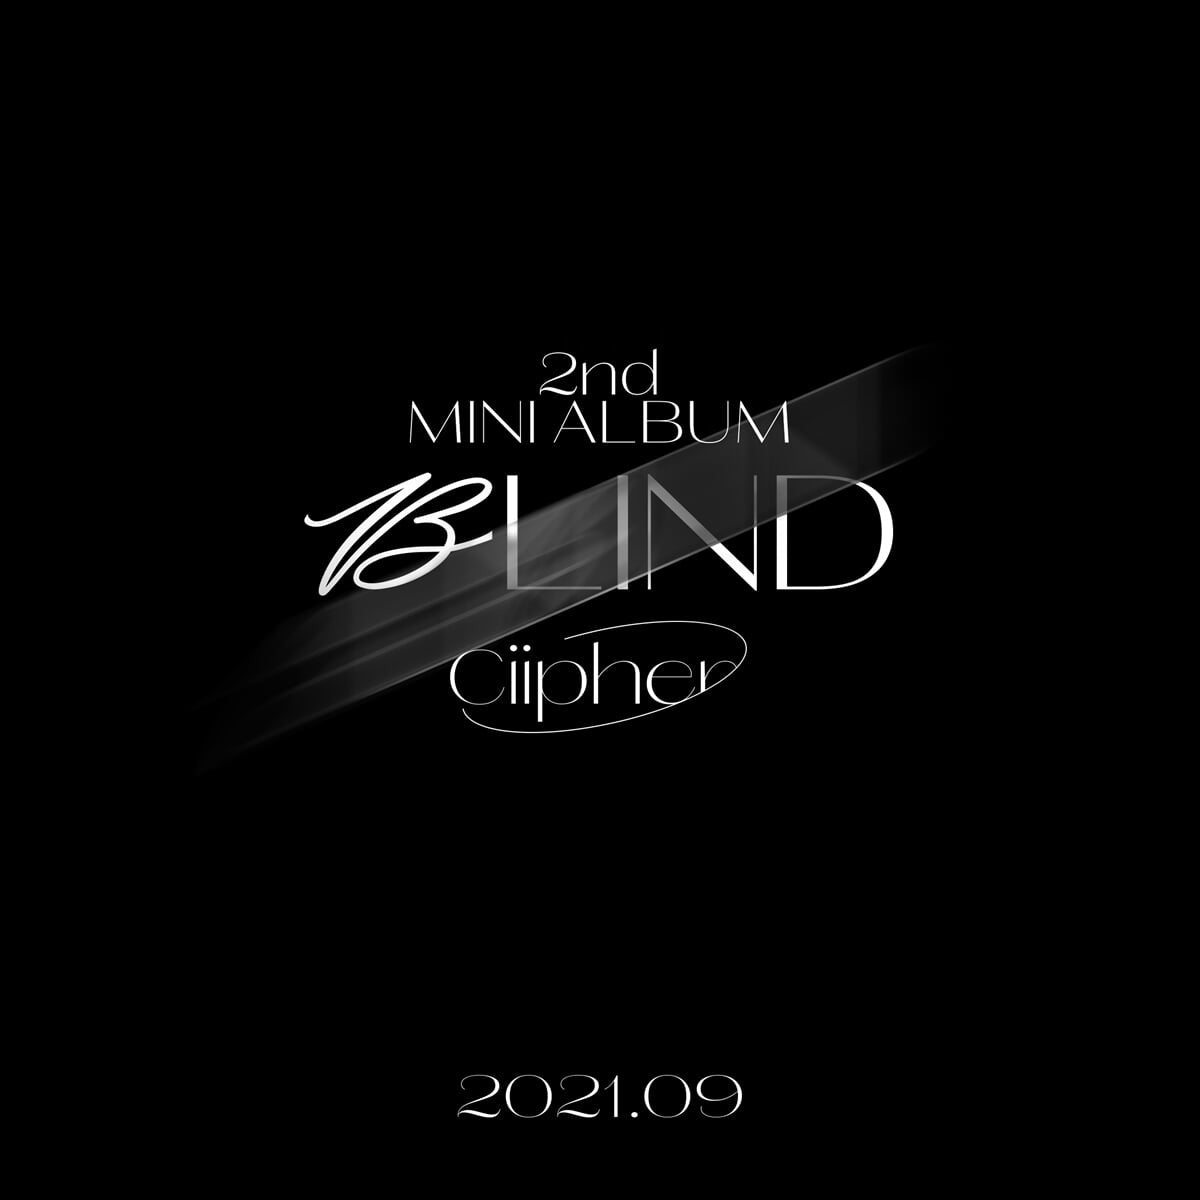 CIIPHER 2ND MINI ALBUM - BLIND